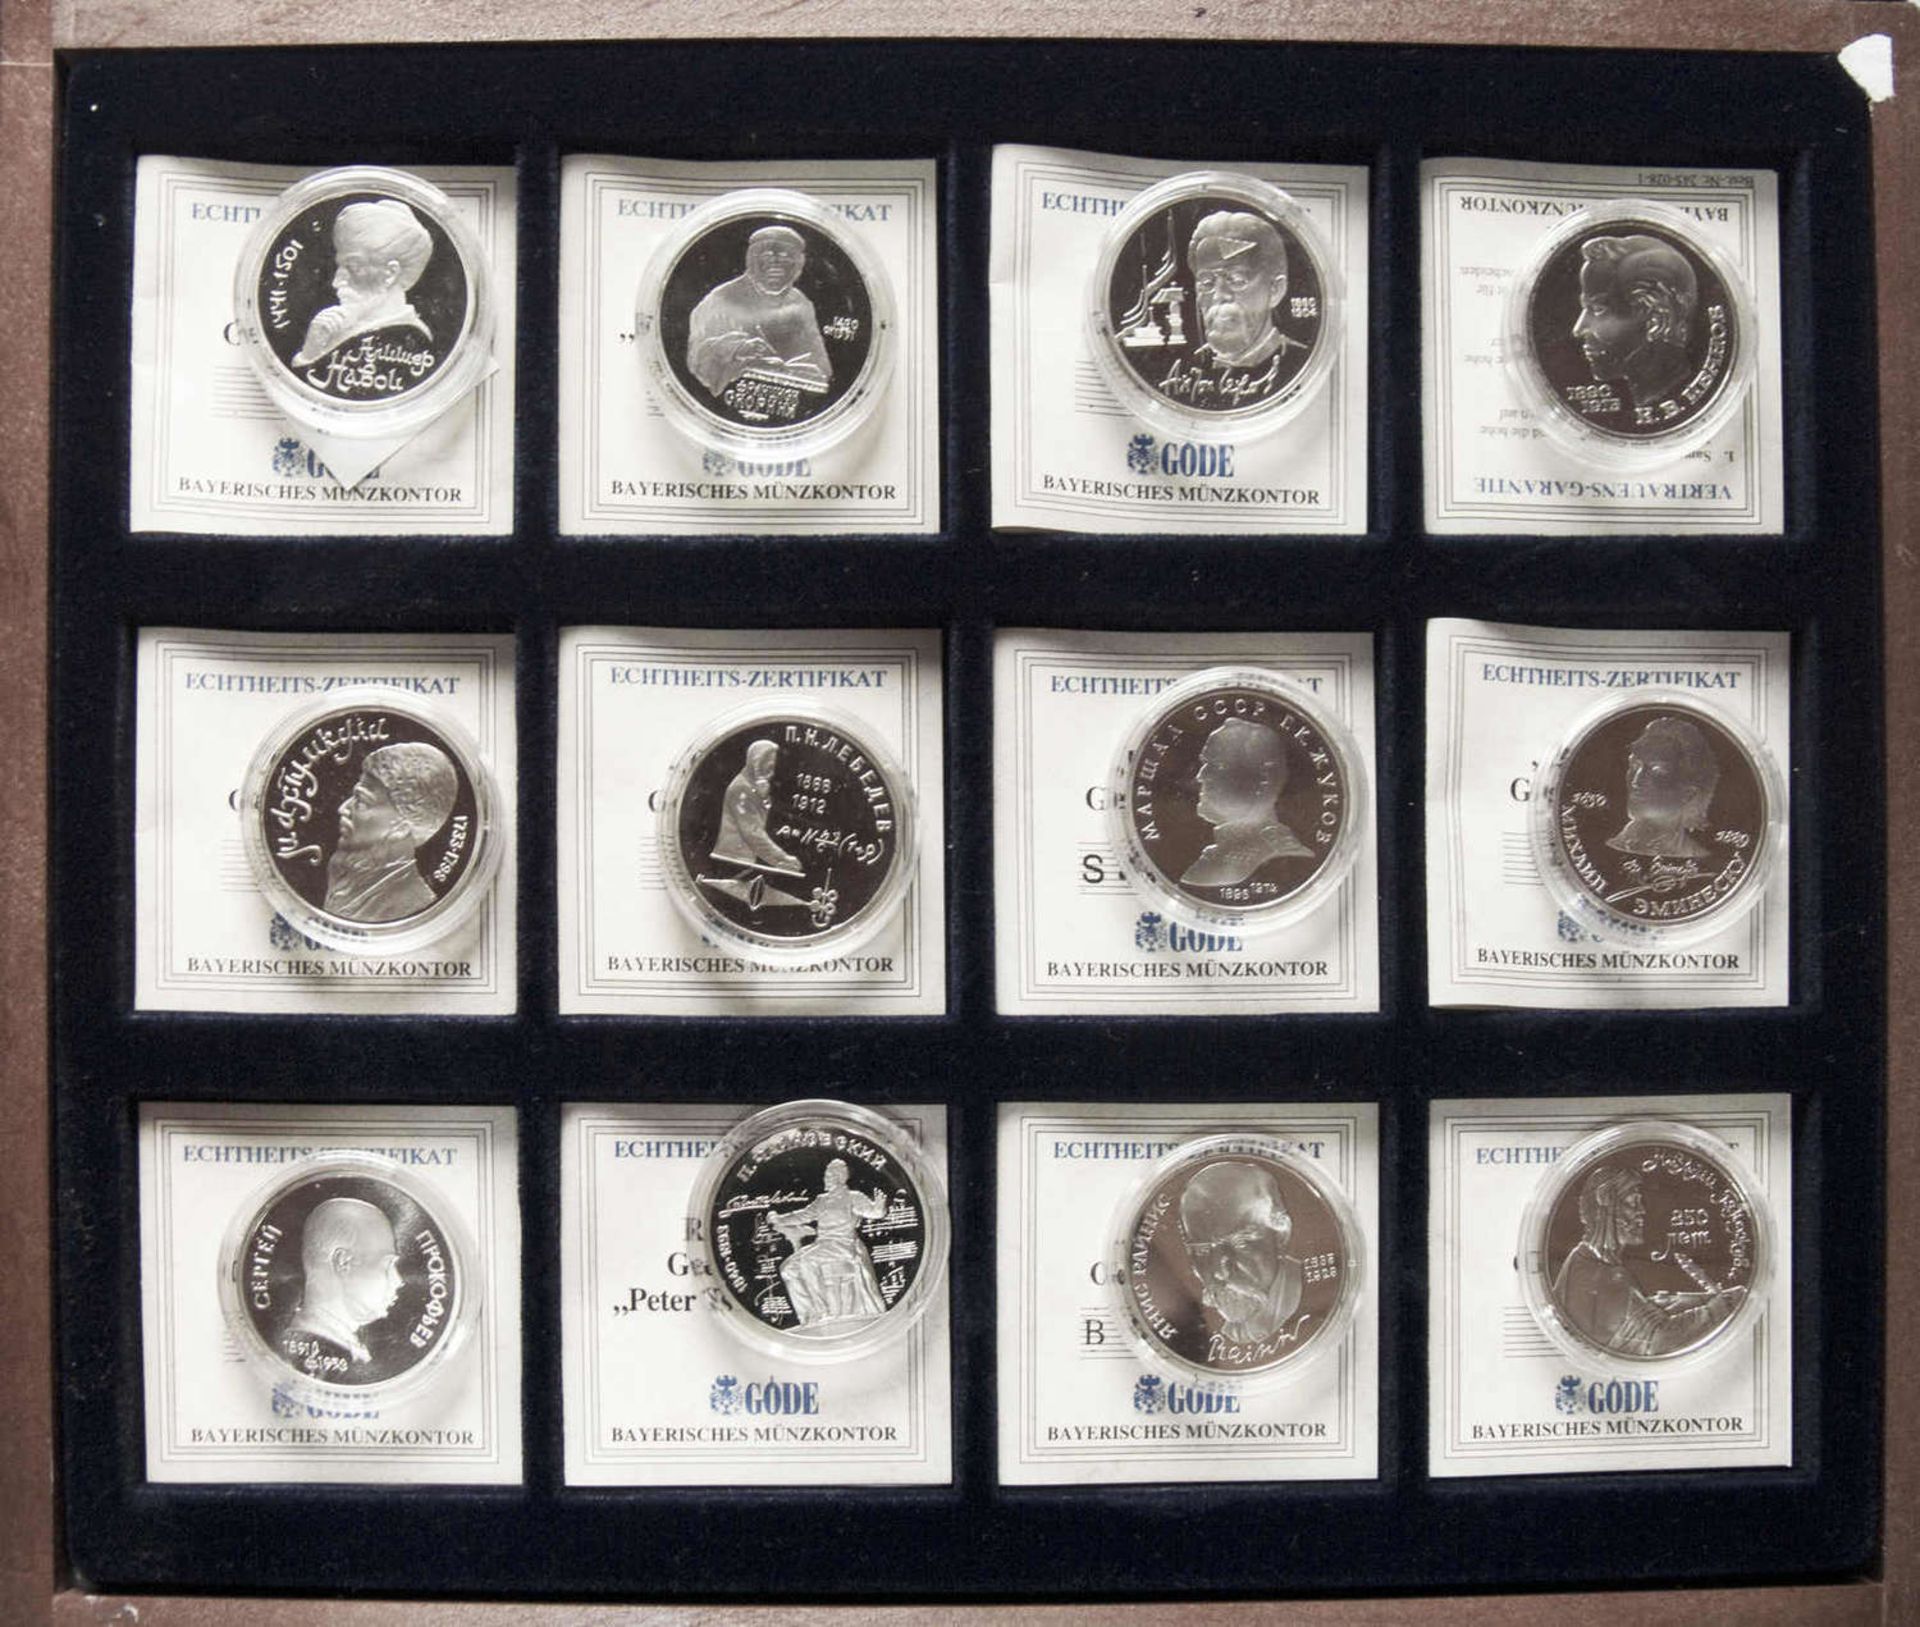 Sowjetunion 1989-1991, Sammlung Gedenk - Rubel - Münzen. Mit Zertifikaten. I Original - Holz -